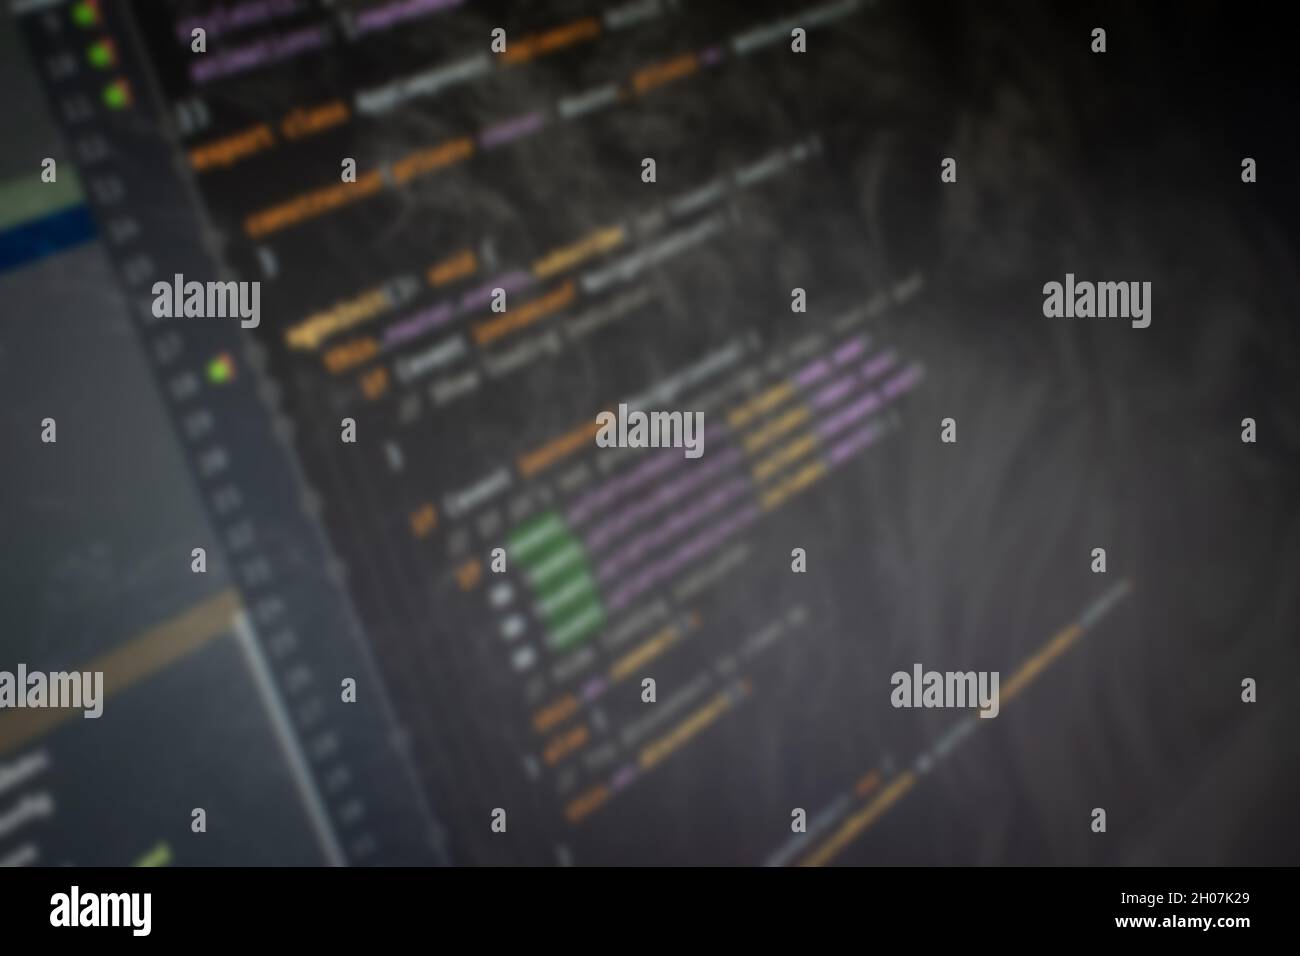 Manuscrit angulaire Hello World code à l'écran image d'arrière-plan floue Banque D'Images